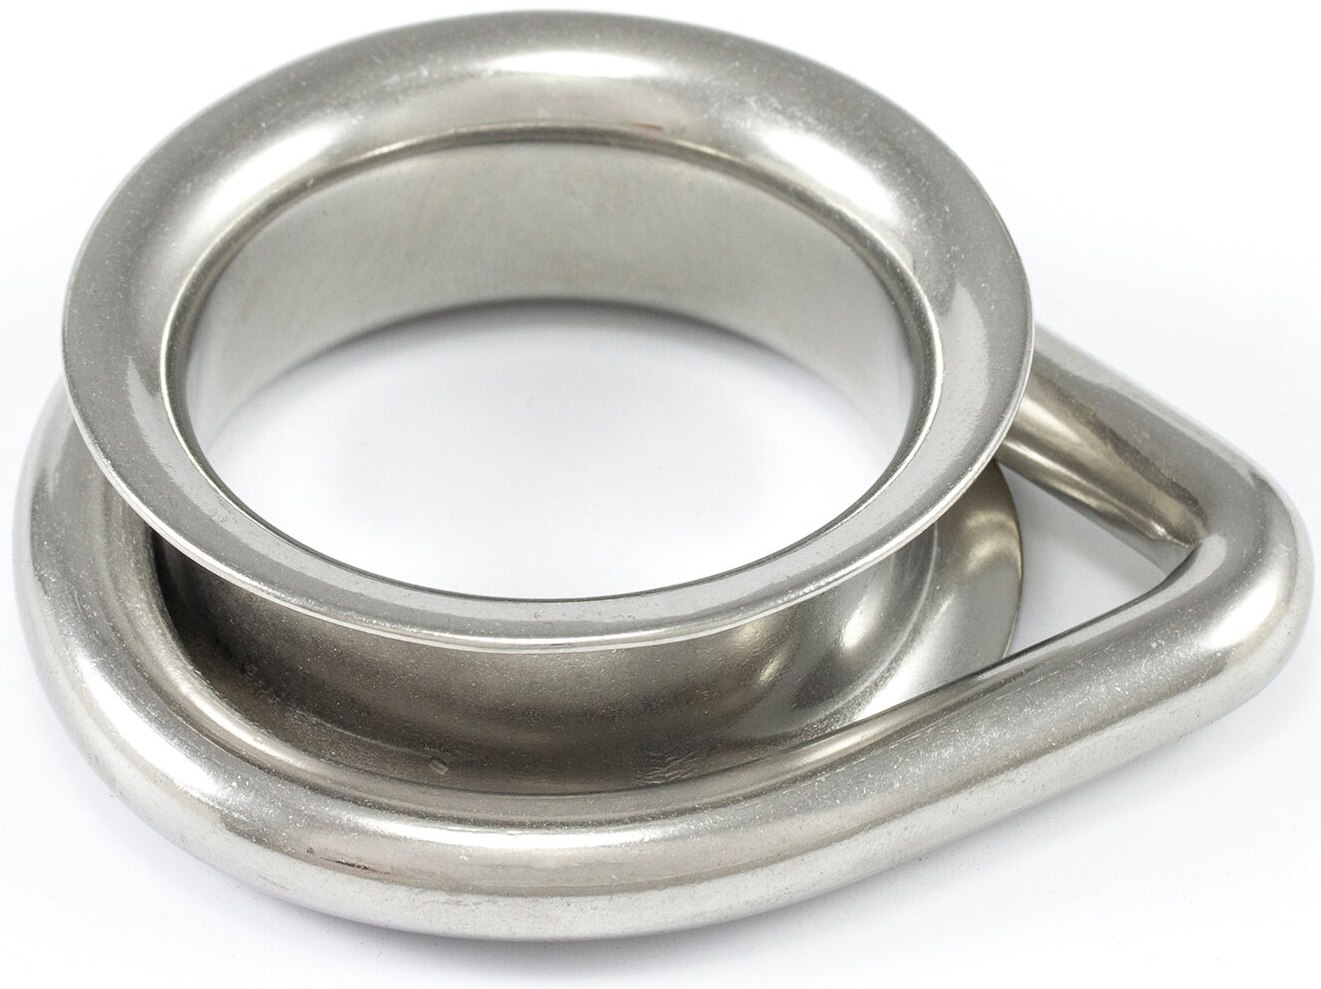 D-образное кольцо с коушем 10 мм 815012, нержавеющая сталь А4 - фото